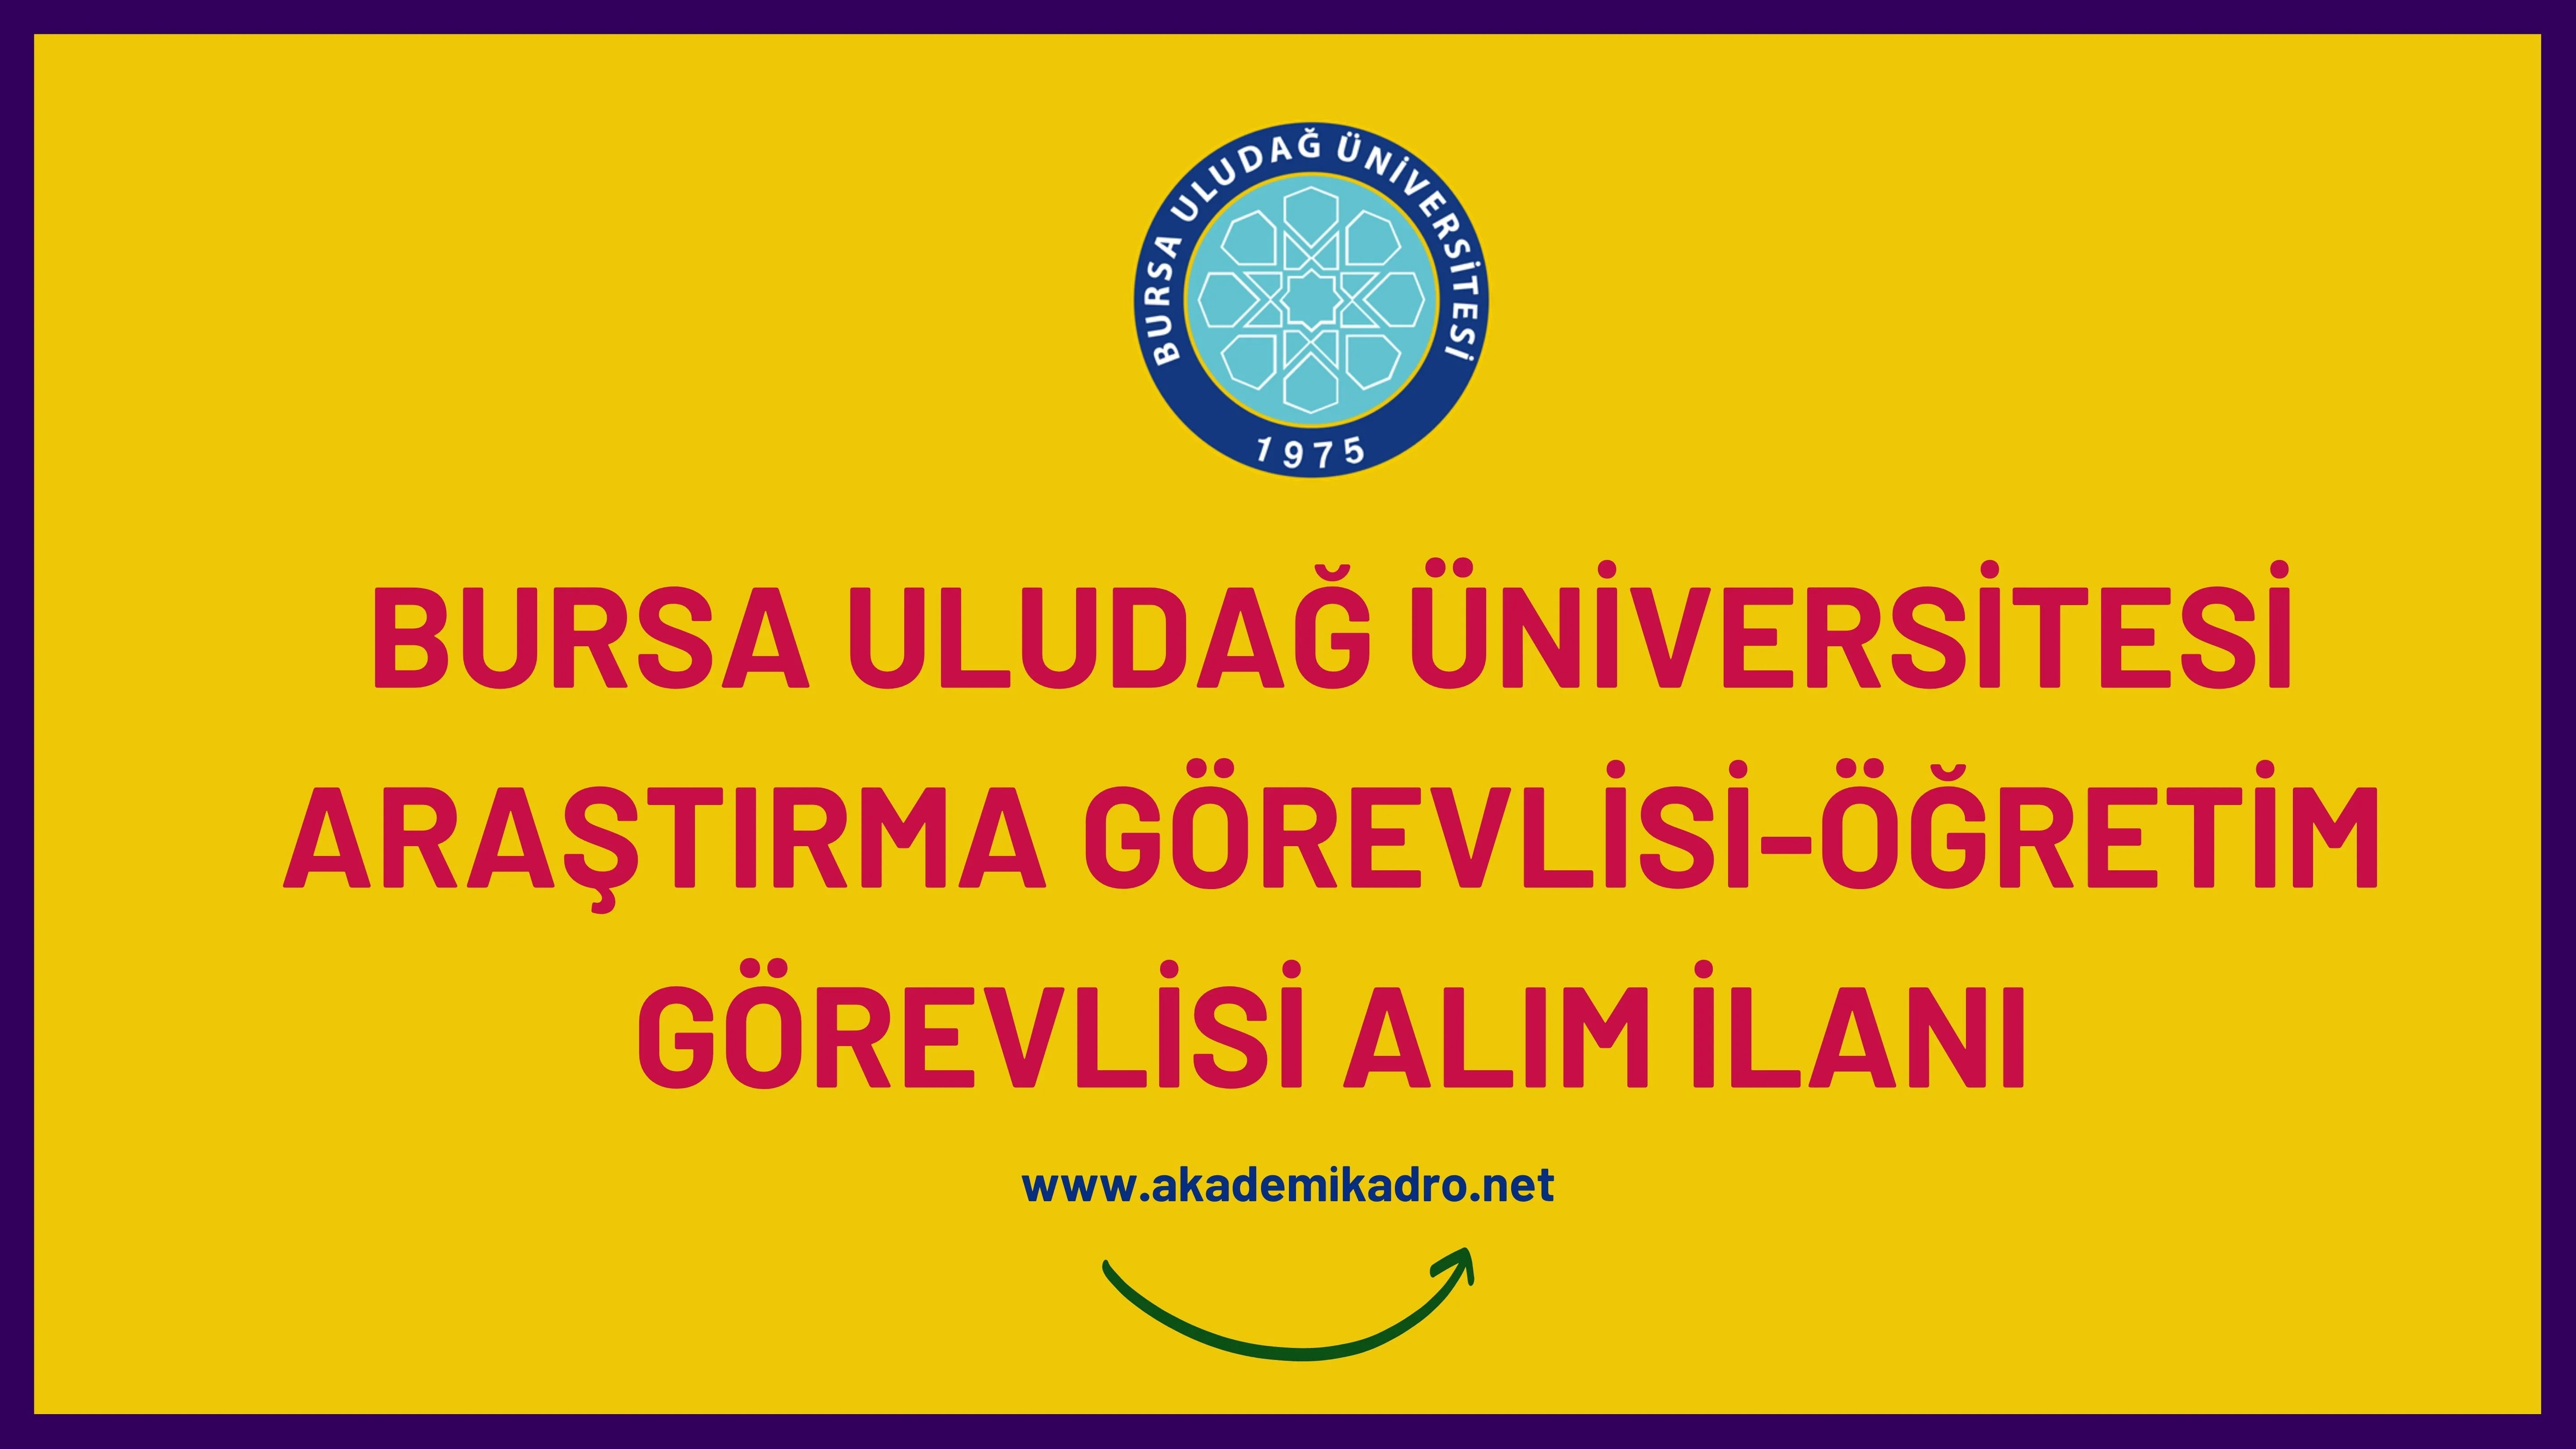 Bursa Uludağ Üniversitesi 2 Araştırma görevlisi ve 7 Öğretim görevlisi alacak. Son başvuru tarihi 04 Ocak 2023.